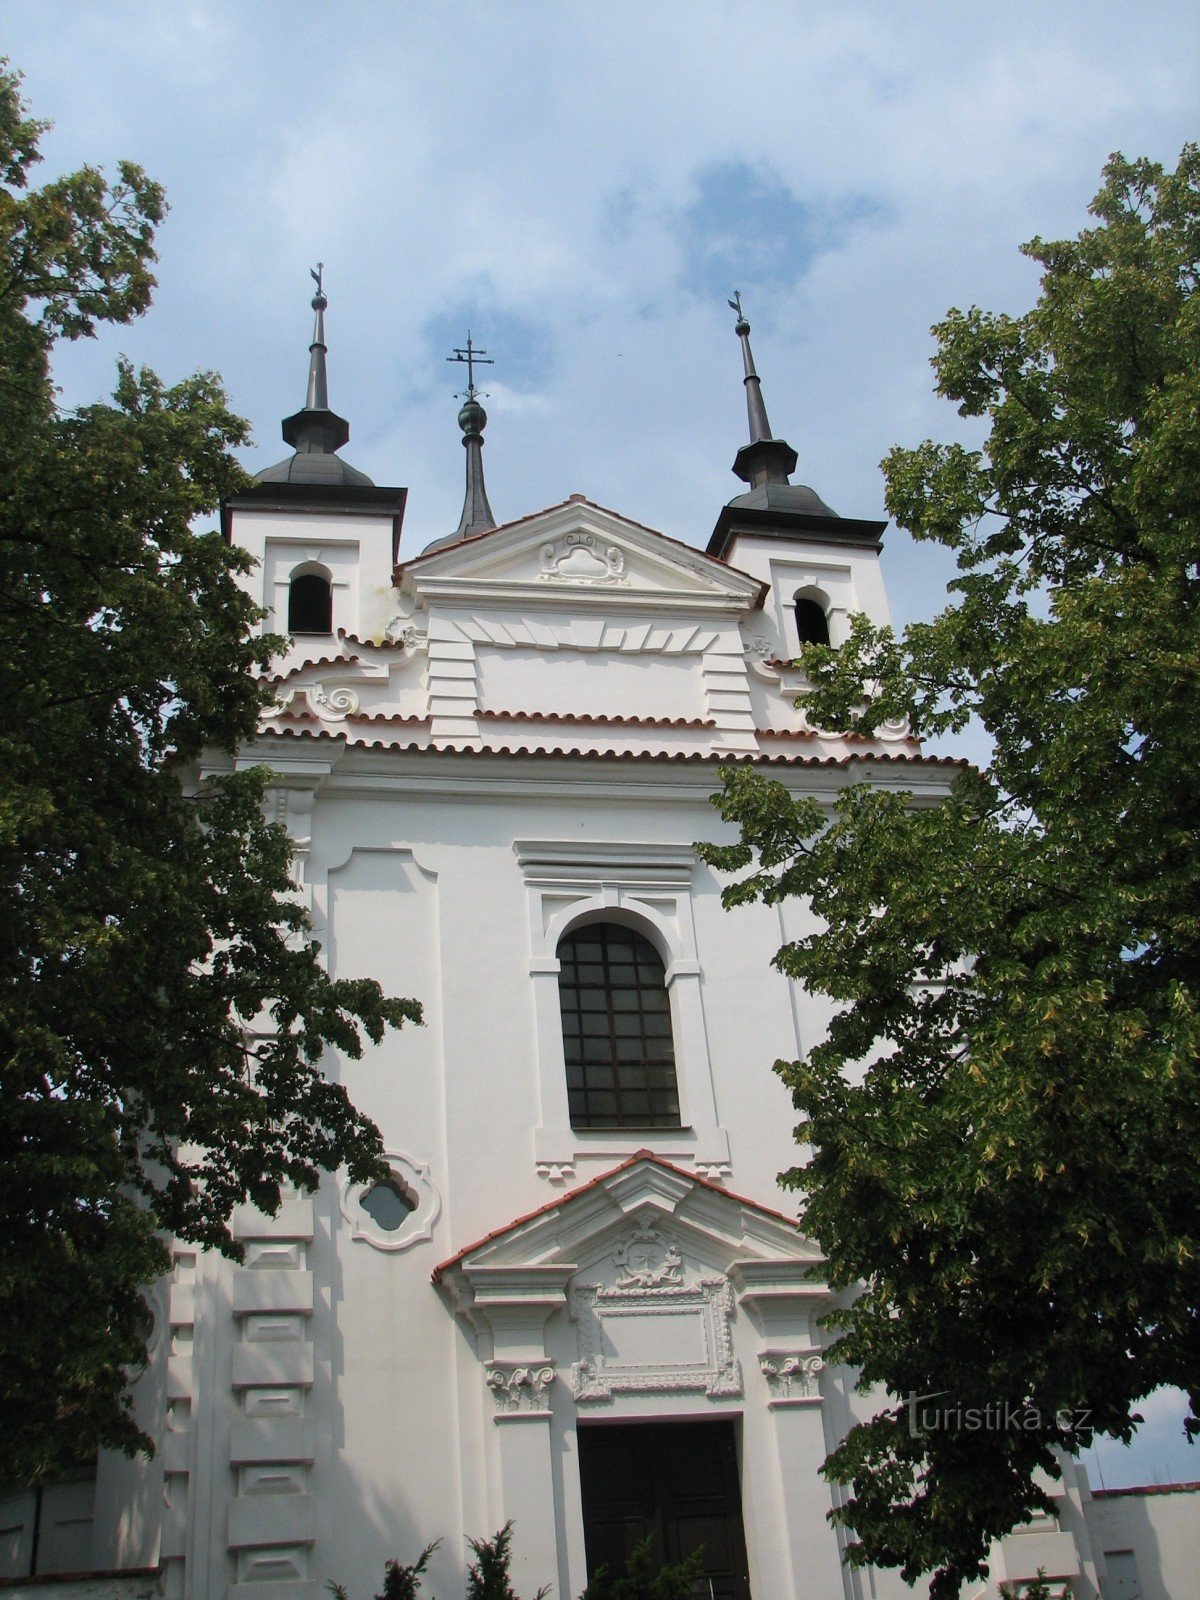 Церковь св. Михал в Бечине